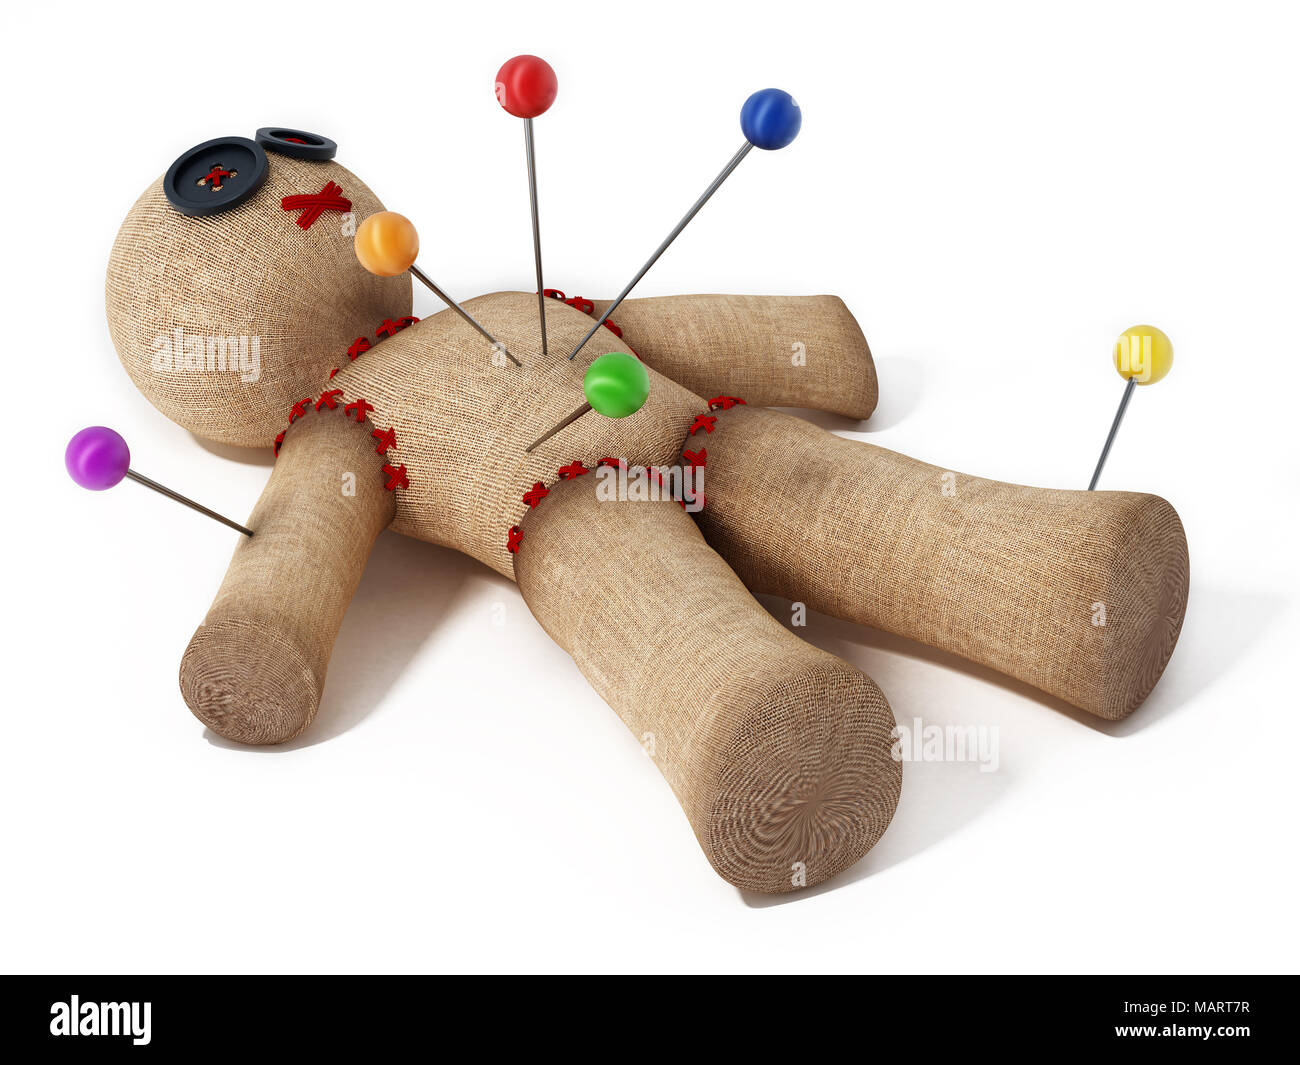 Voodoo Puppe mit Nadeln auf weißem Hintergrund Stockfotografie - Alamy